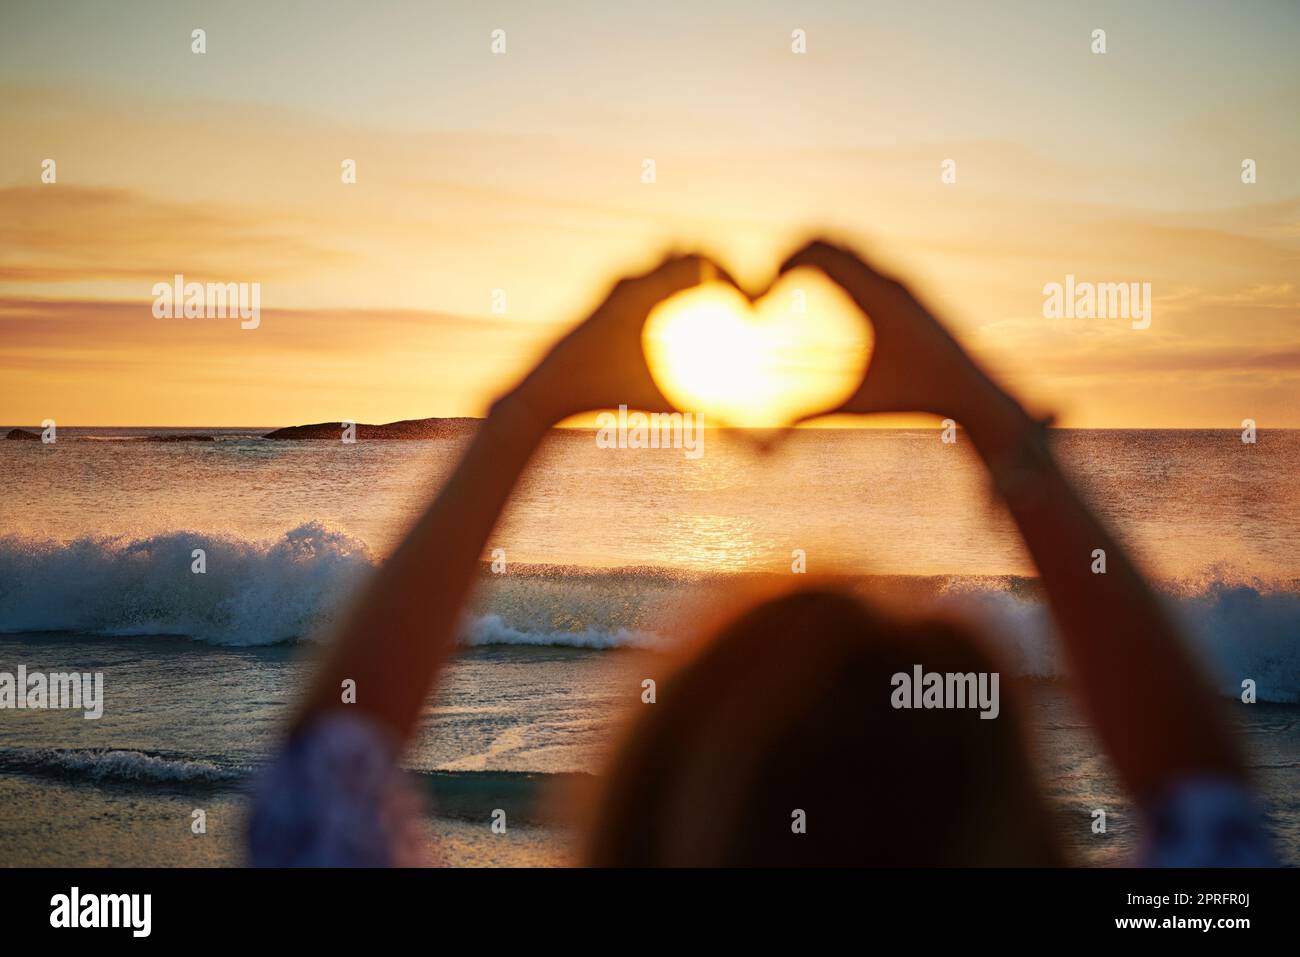 Ama il sole, una donna unecognizzabile sulla spiaggia. Foto Stock